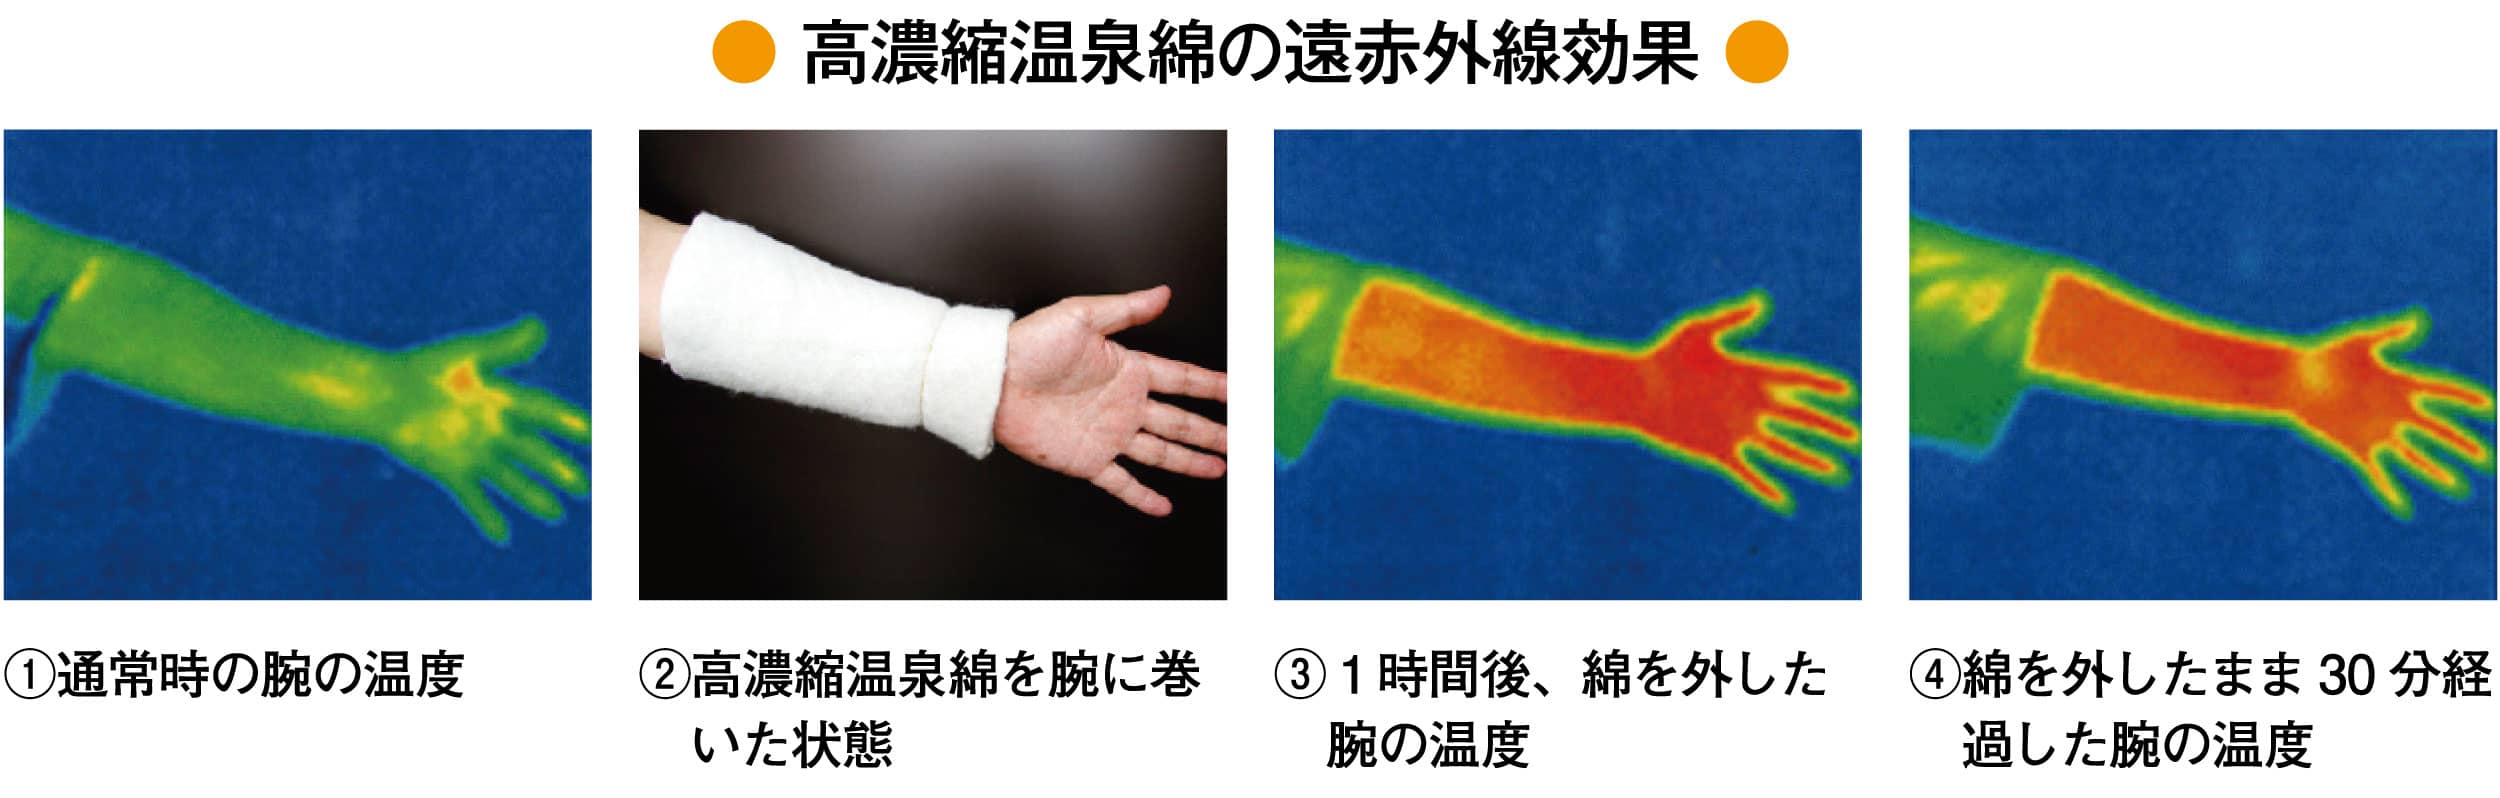 【特許】温泉綿の遠赤外線効果実験サーモグラフ